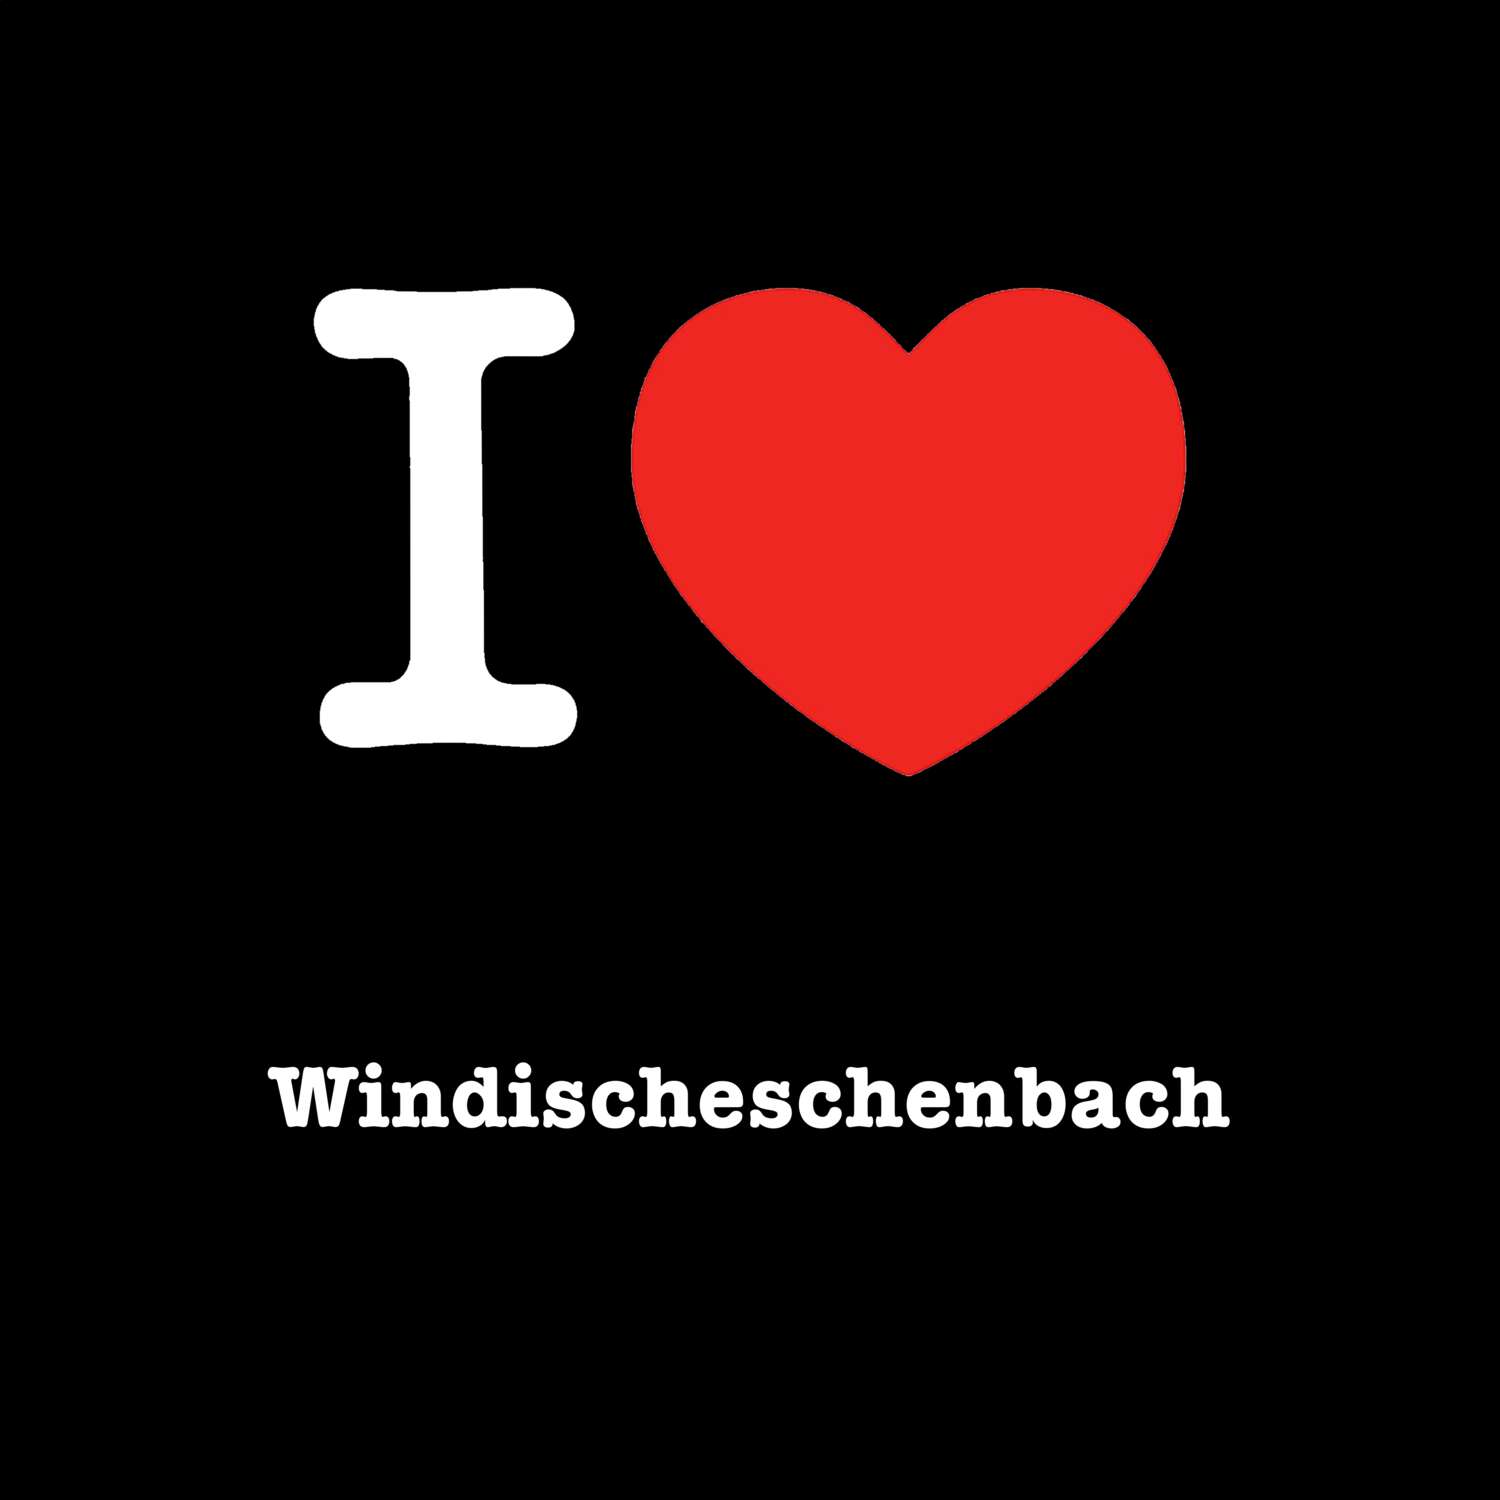 Windischeschenbach T-Shirt »I love«